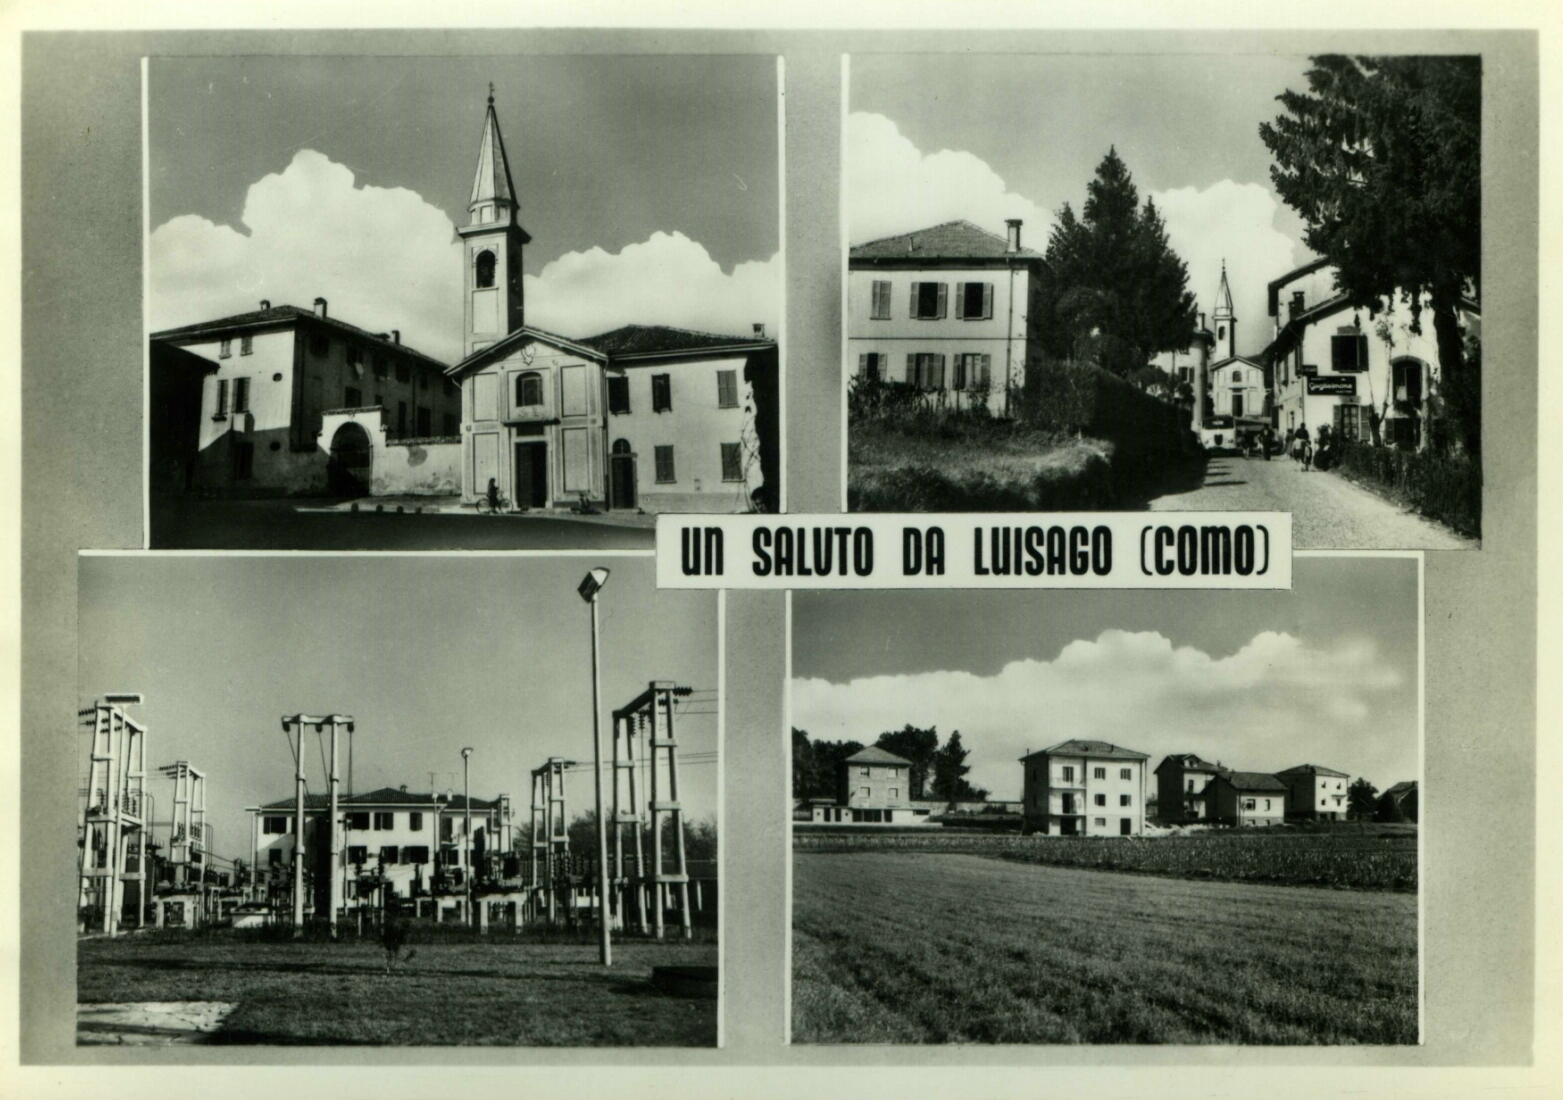 Cartolina di Luisago - anni 60